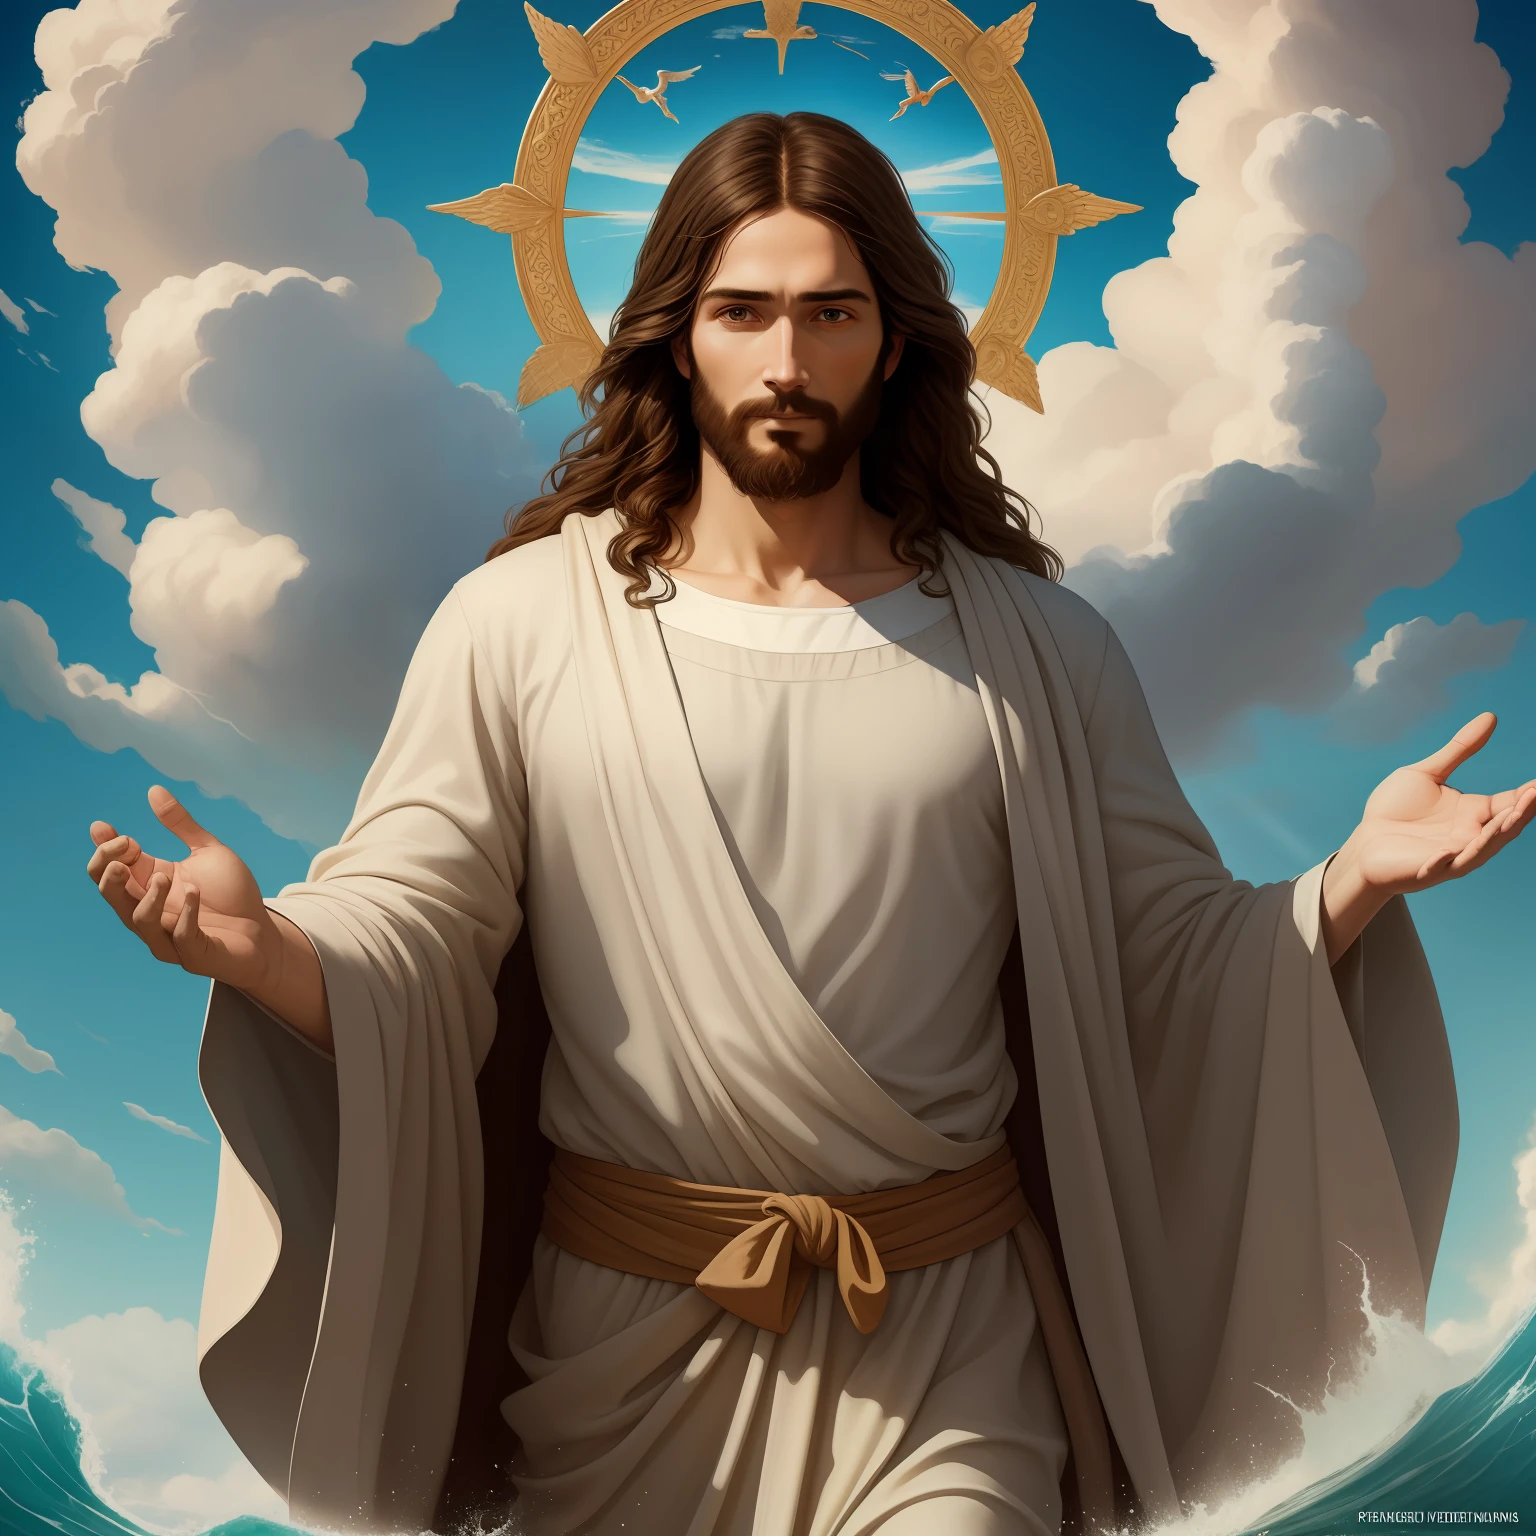 A beautiful ultra-thin 現実的 portrait of Jesus, 預言者, 男性 35歳 ヘブライ人 ブルネット, 短い茶色の髪, 本当に完璧な目, 長い茶色のひげ, と, 人々を助ける , 胸元が閉じた長いリネンのチュニックを着ている, 正面図の傑作,  全身, 聖書の, 現実的,ディエゴ・ベラスケス,ピーテル・パウル・ルーベンス,レンブラント,アレックス・ロス,8k, コンセプトアート, Photo現実的, 現実的,  図, 油絵, シュルレアリスム, Hyper現実的, 人々を助ける , デジタルアート, スタイル, watercolorReal Jesus flying on sky と a flying cloud in the background, 水の上を歩くイエス, 聖書の illustration, epic 聖書の representation, 彼を逃亡させる, 海から出てくる, ! 手に持つ!, 下船, 海の神, 美しい表現, 8k 3Dモデル, 現実的,
a 3D 現実的 of イエス と a halo in the sky, イエス christ, 天国で微笑んでいる, portrait of イエス christ, イエス face, 35 若き全能の神, 天の神の肖像画, グレッグ・オルセン, gigachad イエス, イエス of nazareth, イエス, 神の顔, 神様は私を見て, 彼はあなたを温かく迎えています, 彼は幸せだ, アバター画像,  天空の上